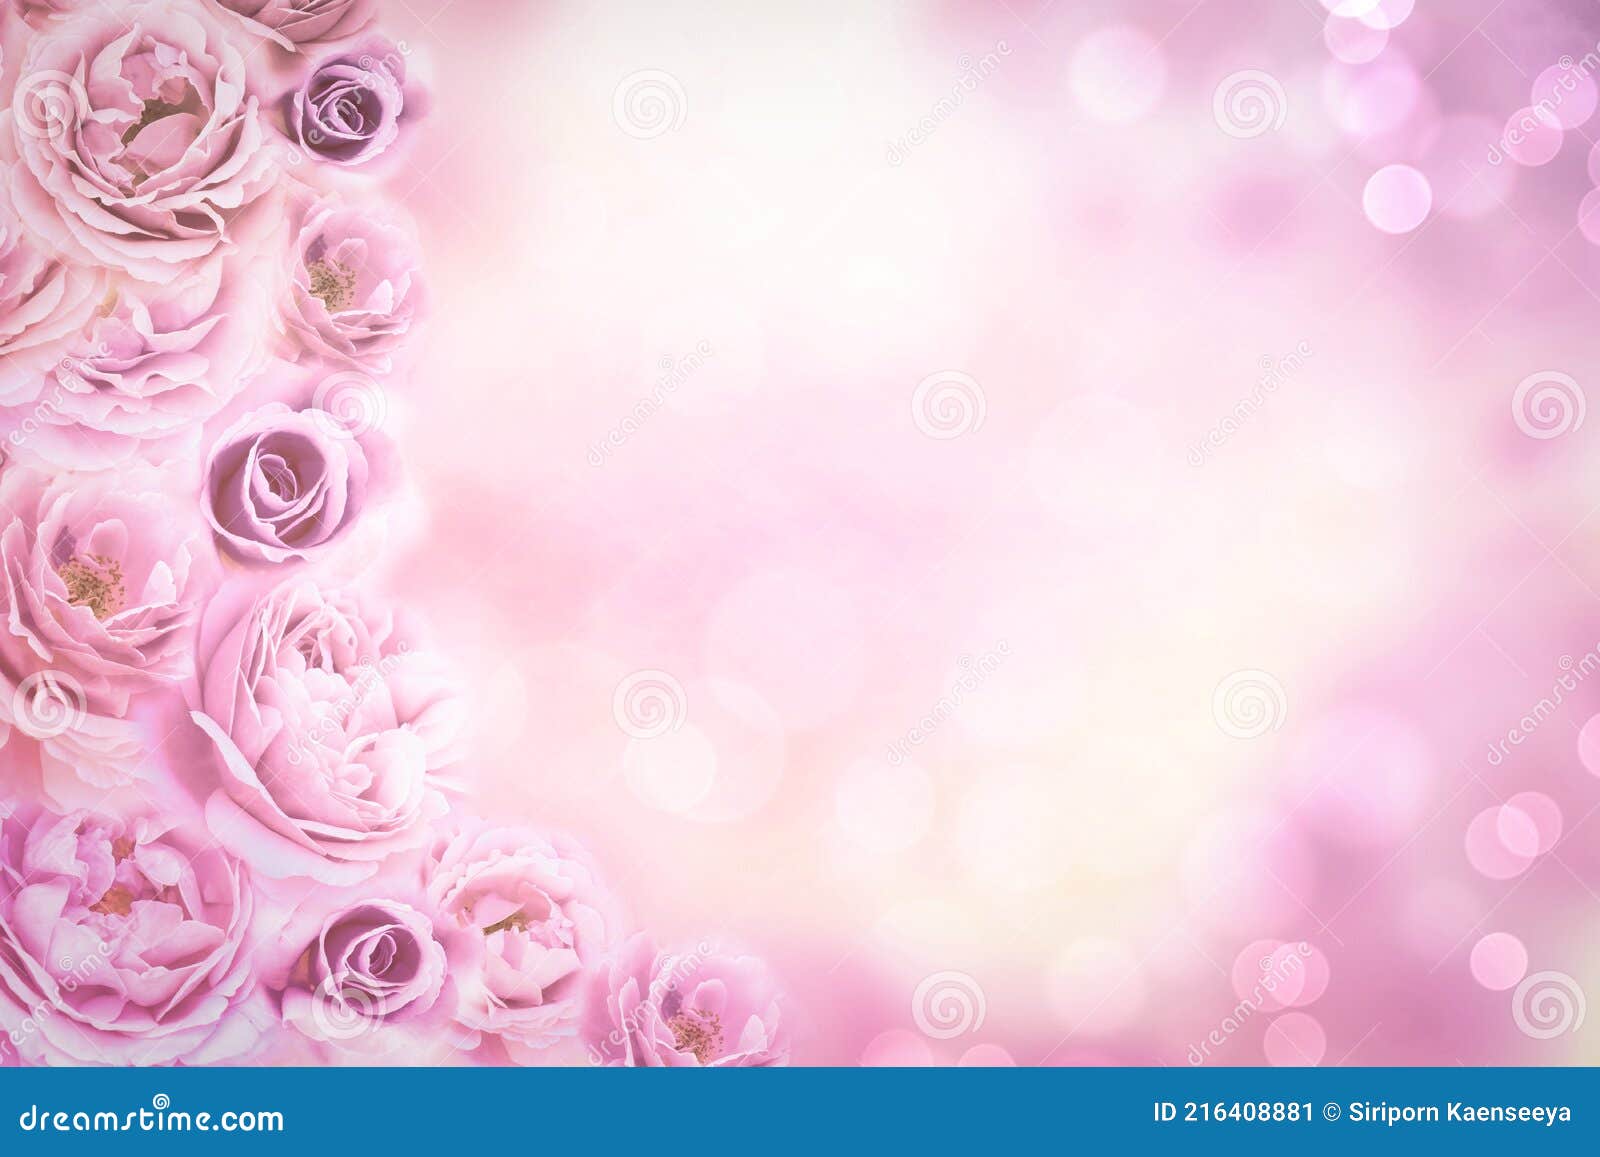 Chiêm ngưỡng hình nền hoa hồng đẹp trong phong cách retro vintage sẽ đưa bạn đến một thế giới lãng mạn và thanh lịch. Với sắc hồng nhẹ nhàng, hoa hồng đang nở rộ với không gian phong cách retro, sẵn sàng để các đôi uyên ương chụp những bức hình đẹp và đầy ý nghĩa.